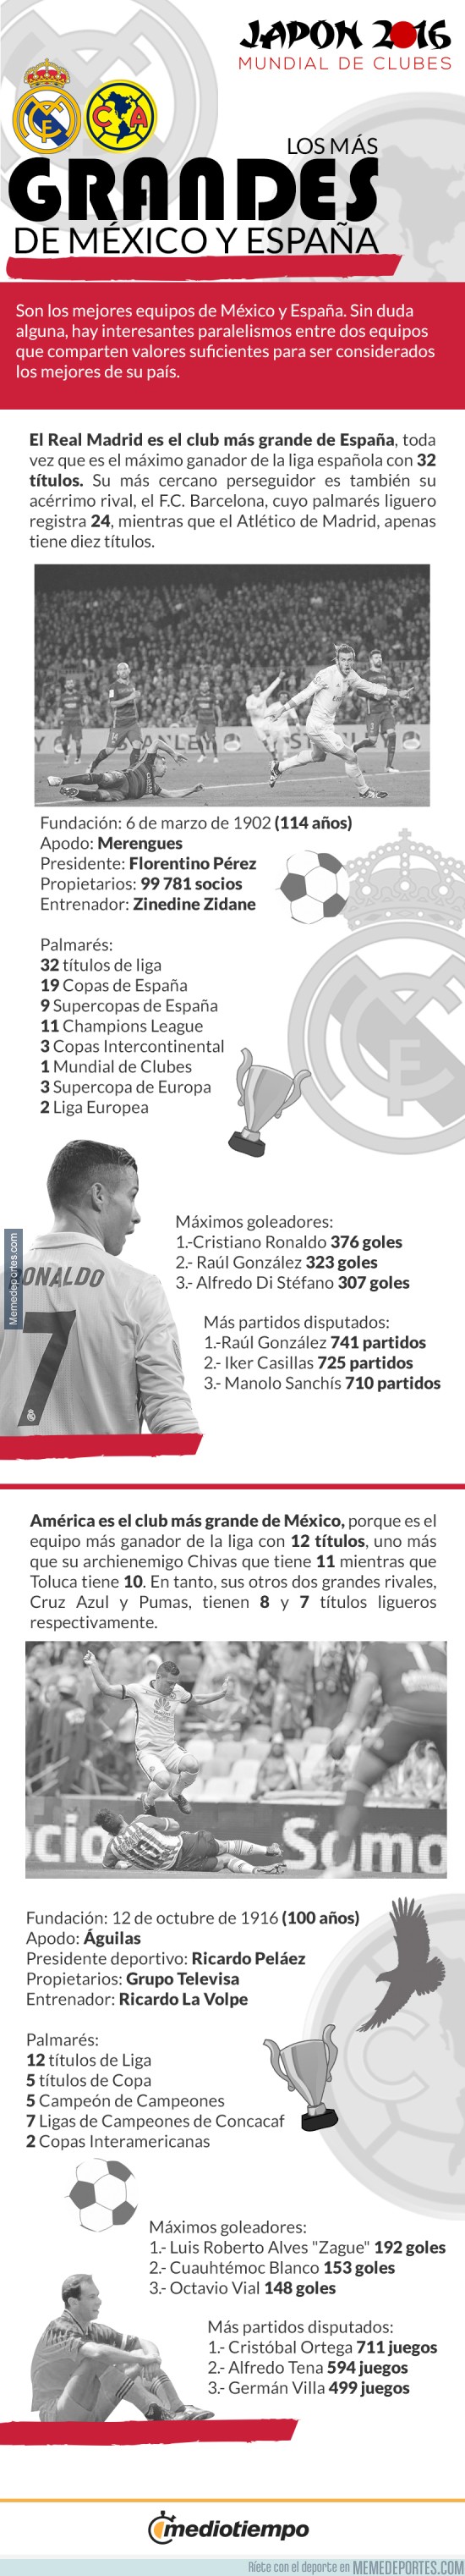 932729 - Infografia, algunos datos del América y Real Madrid